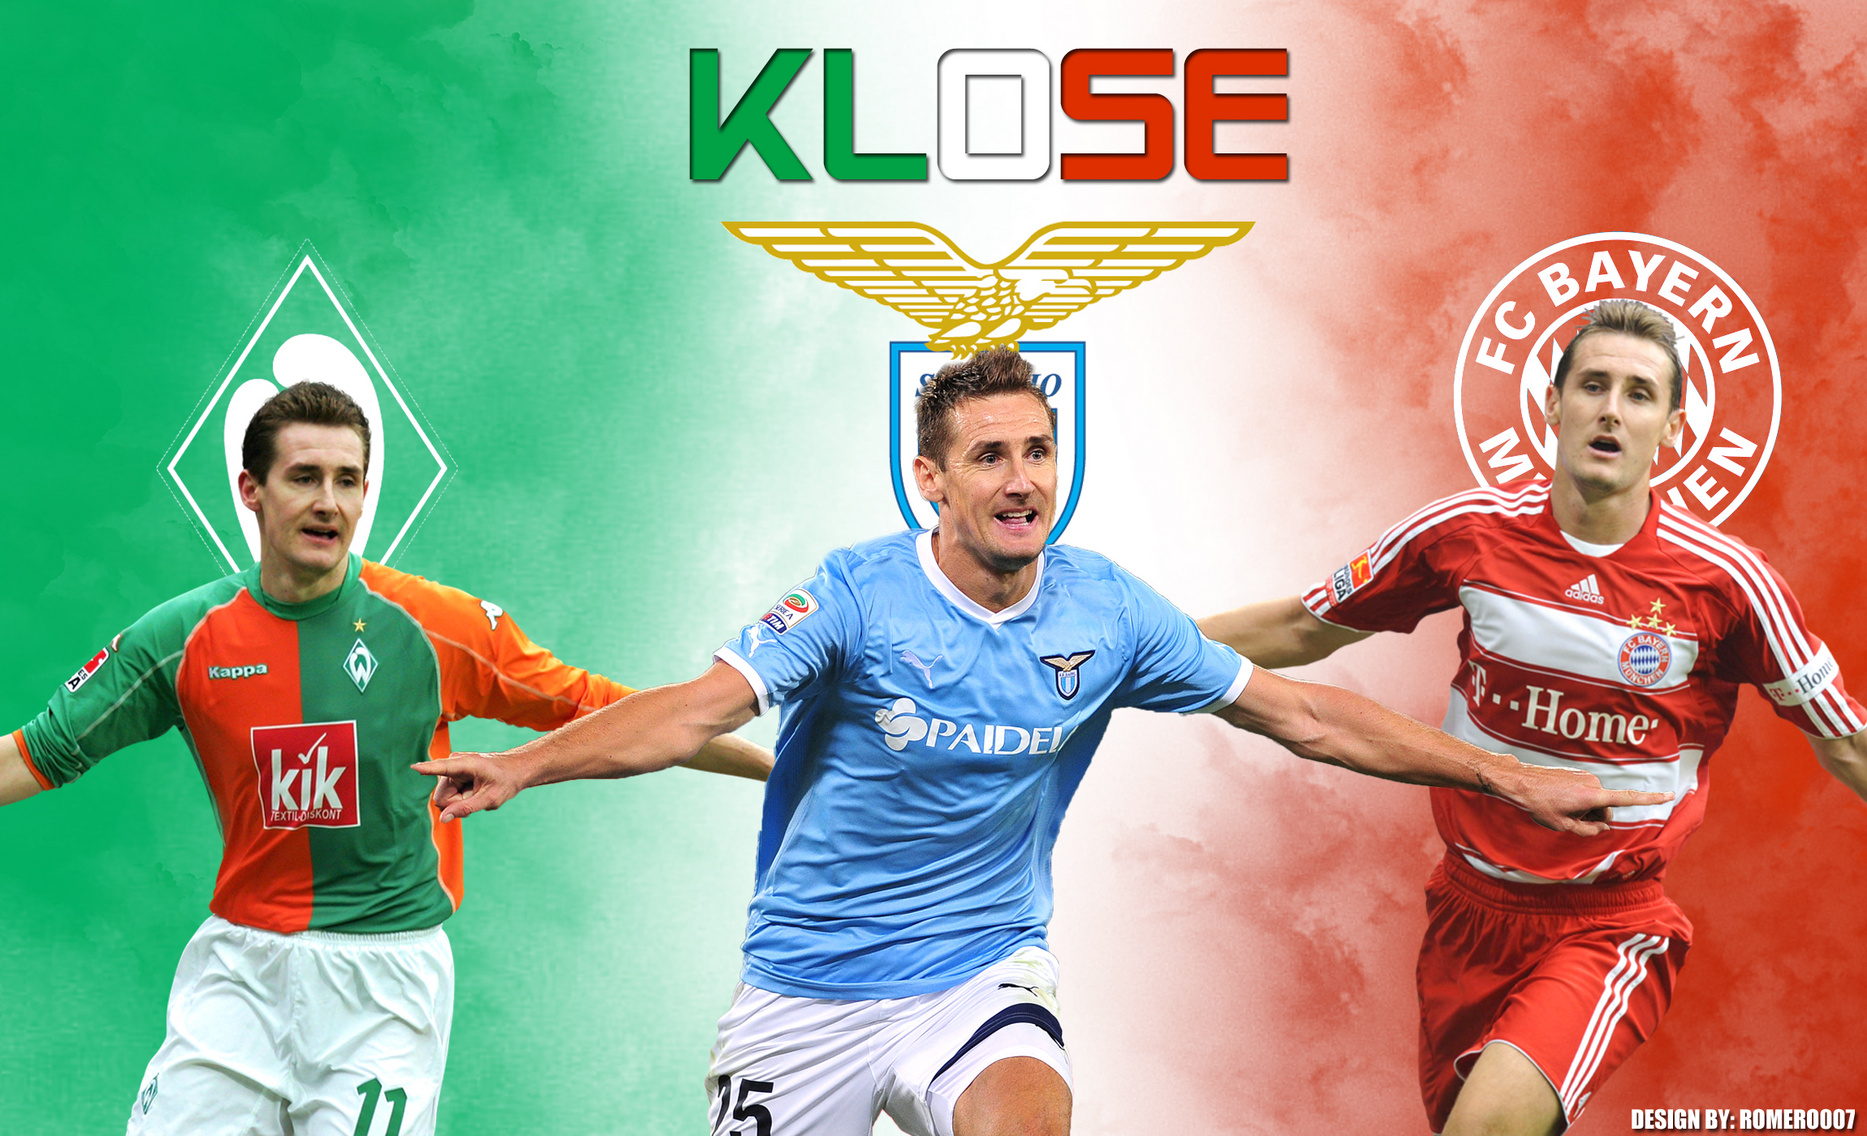 Miroslav Klose Football Wallpaper